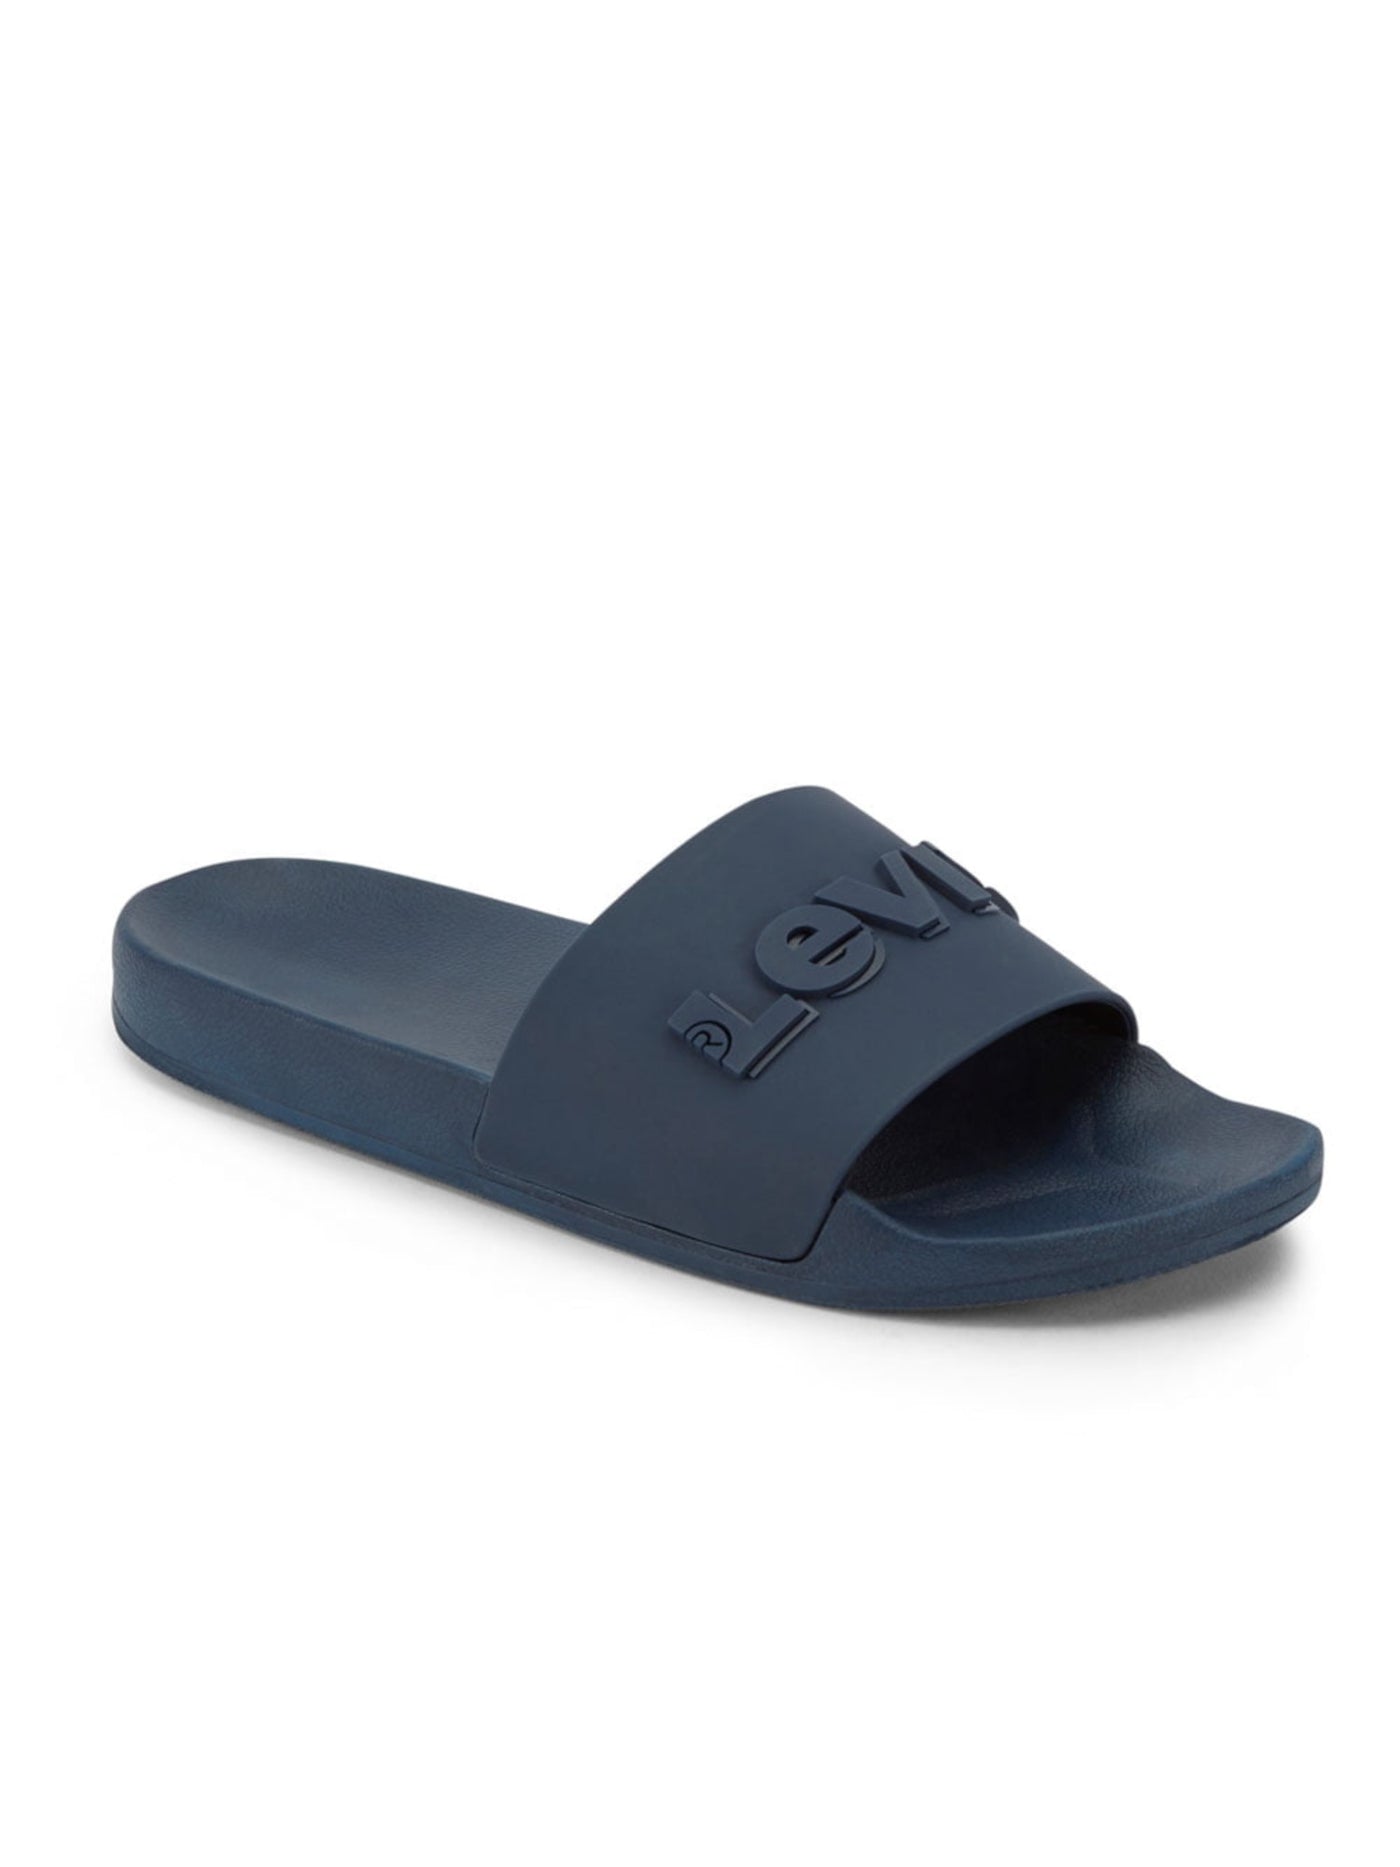 LEVI'S Mens Navy Padded Open Toe Slip On Slide Sandals Shoes 8